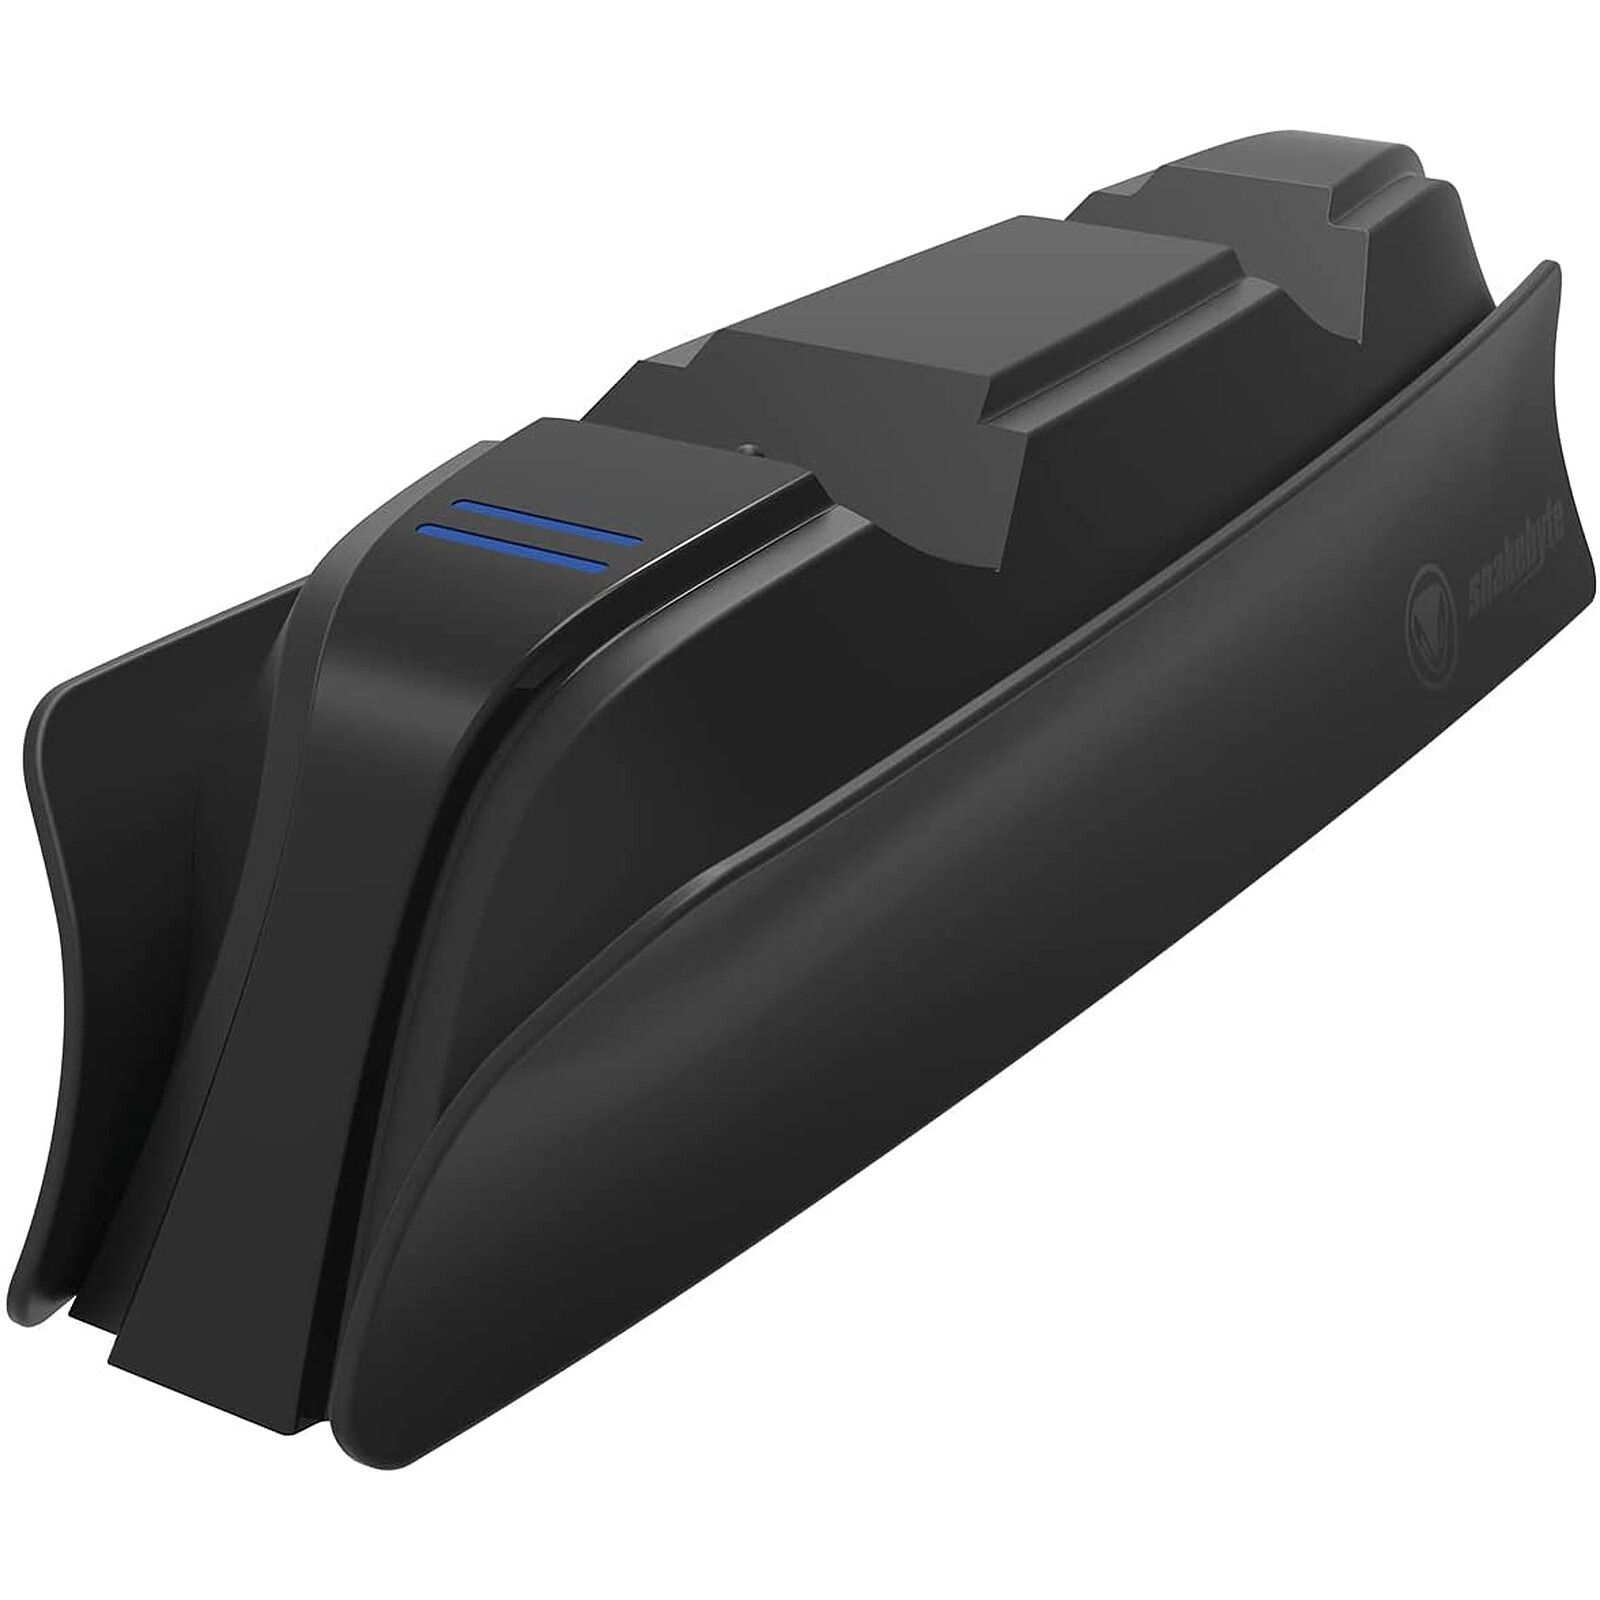 snakebyte - Station de charge PlayStation 5 pour manettes DualSense -  Accessoires PS5 - LDLC